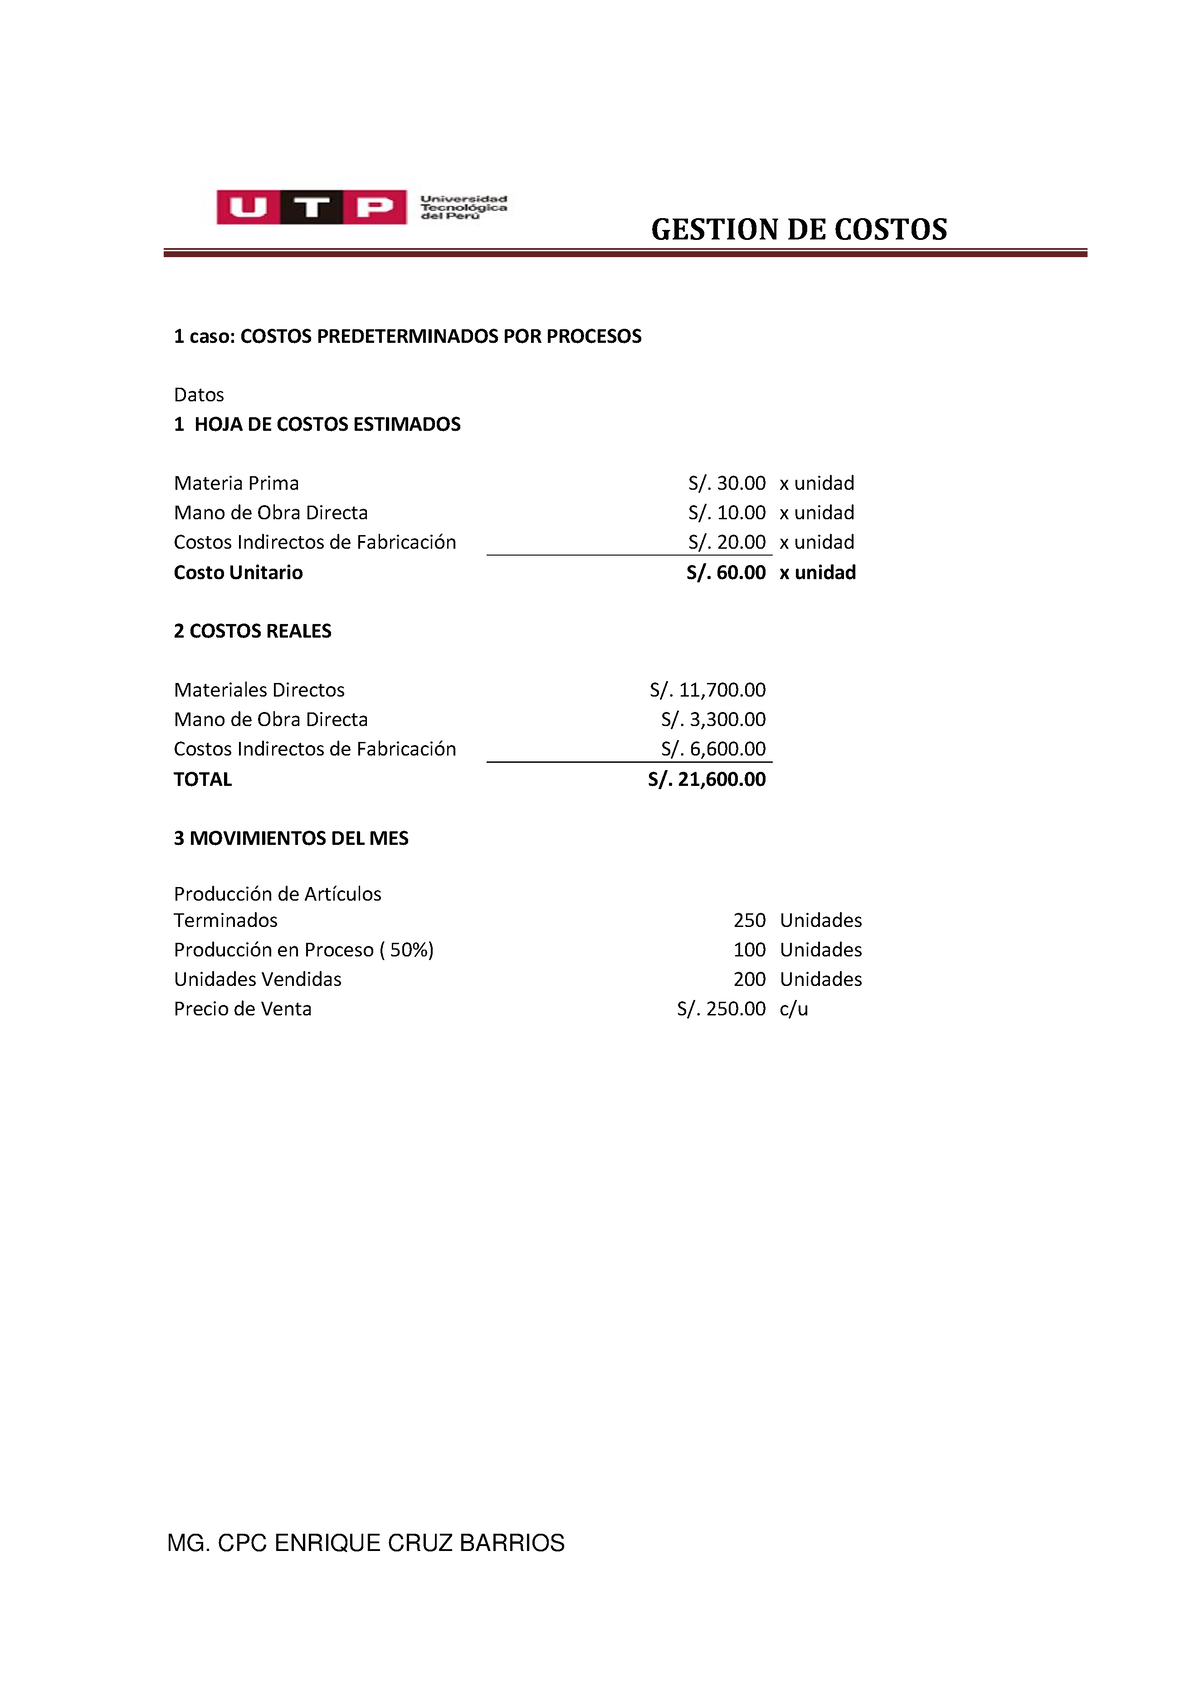 Casos Practicos Costos Estimados Gestion De Costos Mg Cpc Enrique Cruz Barrios 1 Caso Costos 0087